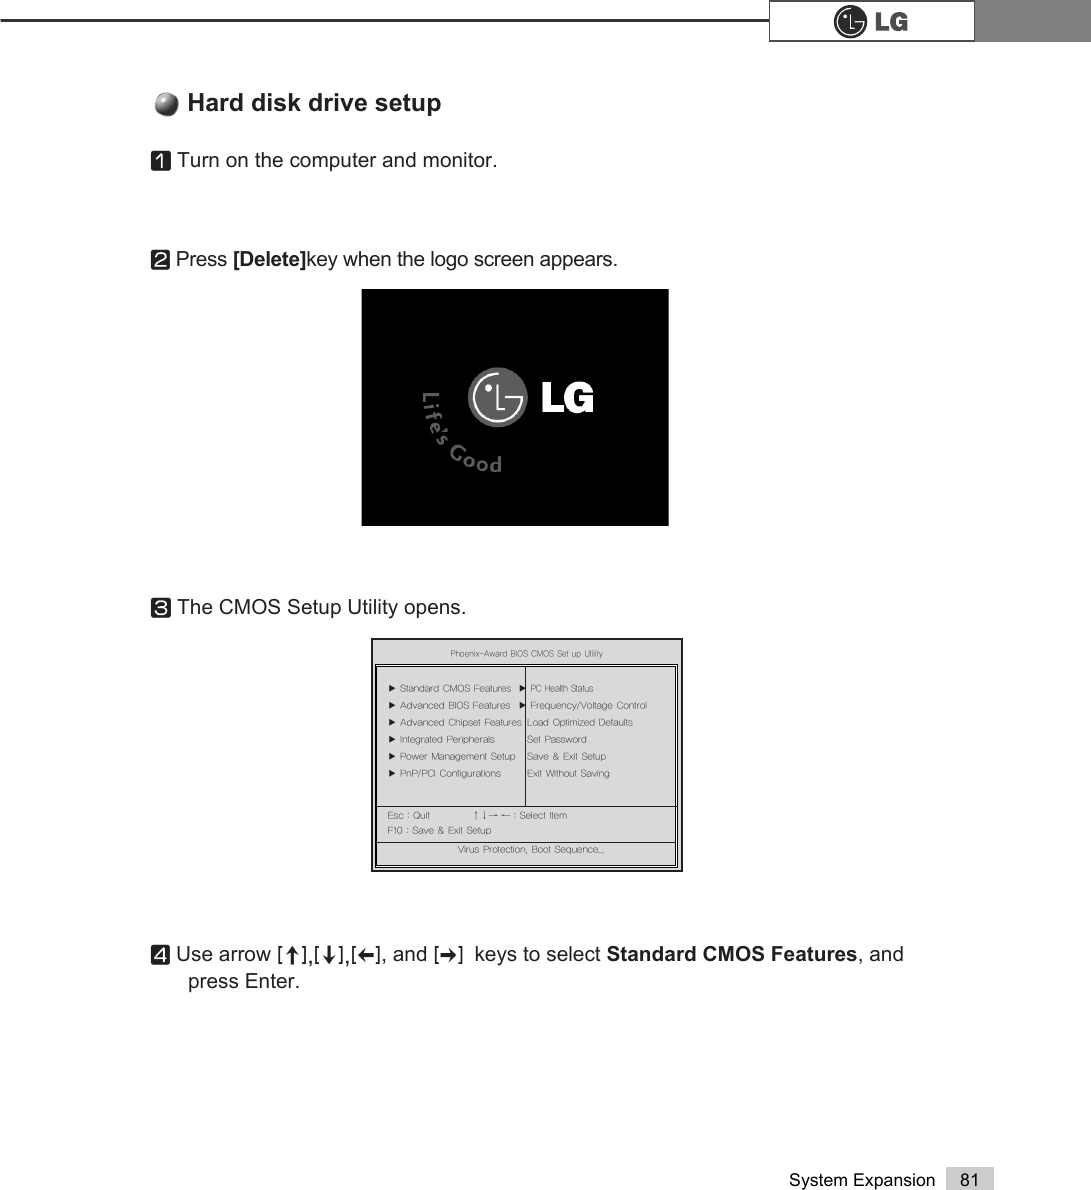 81System ExpansionⓞTurn on the computer and monitor.ⓟPress [Delete]key when the logo screen appears.ⓠThe CMOS Setup Utility opens.ⓡUse arrow &gt;Ⓑ@&gt;Ⓒ@&gt;⒵@, and &gt;Ⓐ@keys to select Standard CMOS Features, and press Enter.Hard disk drive setup3KRHQL[$ZDUG%,26&amp;0266HWXS8WLOLW\Ě 6WDQGDUG&amp;026)HDWXUHV Ě3&amp;+HDOWK6WDWXVĚ $GYDQFHG%,26)HDWXUHV Ě )UHTXHQF\9ROWDJH&amp;RQWUROĚ $GYDQFHG&amp;KLSVHW)HDWXUHV /RDG2SWLPL]HG&apos;HIDXOWVĚ ,QWHJUDWHG3HULSKHUDOV 6HW3DVVZRUGĚ 3RZHU0DQDJHPHQW6HWXS 6DYH([LW6HWXSĚ 3Q33&amp;,&amp;RQILJXUDWLRQV ([LW:LWKRXW6DYLQJ(VF4XLW êëè é 6HOHFWOWHP)6DYH([LW6HWXS9LUXV3URWHFWLRQ%RRW6HTXHQFH